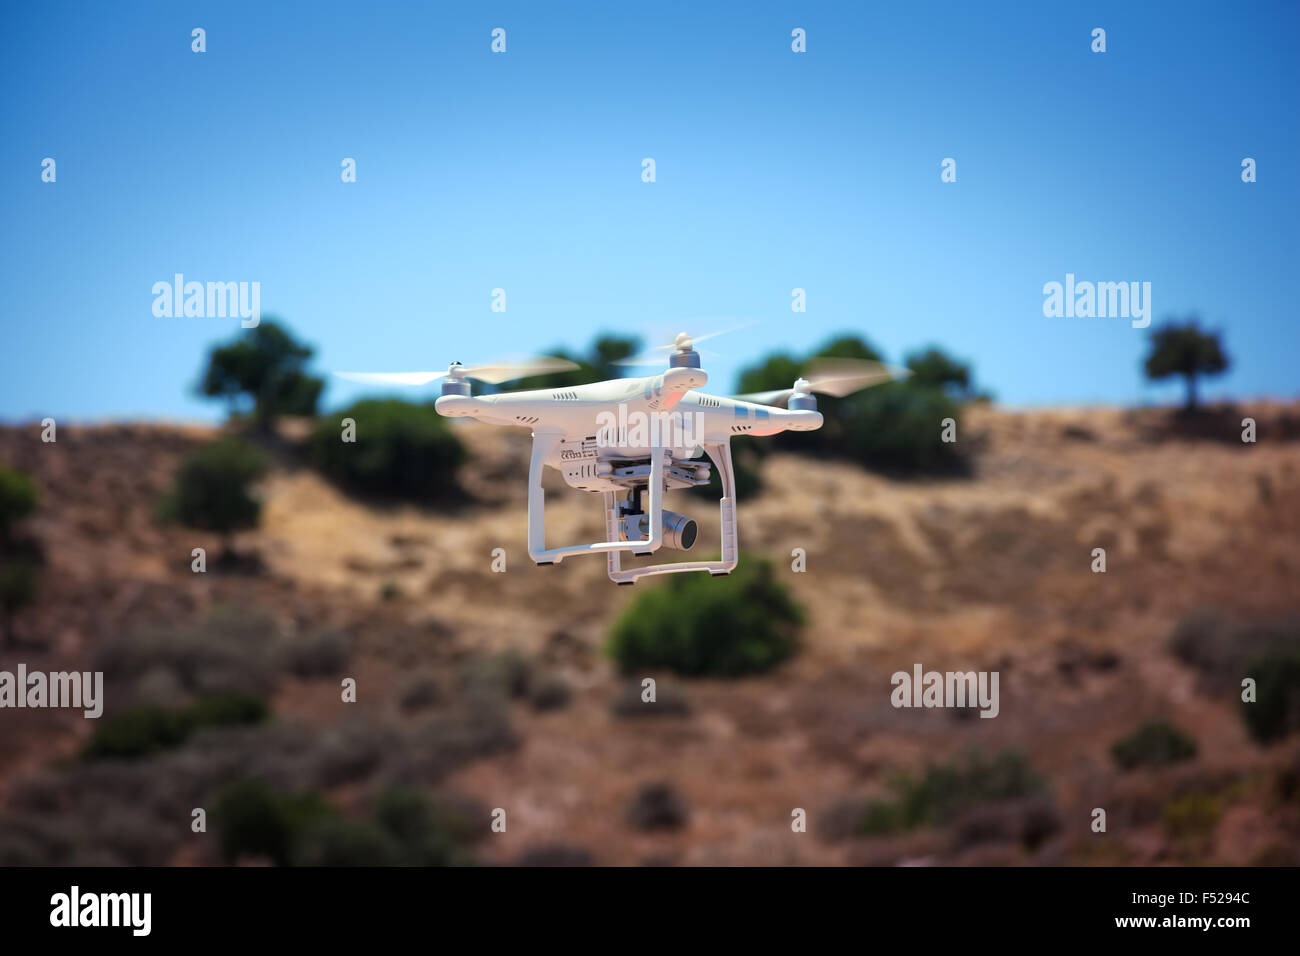 DJI Phantom 3 Rencontre multirotors Drone en vol Banque D'Images